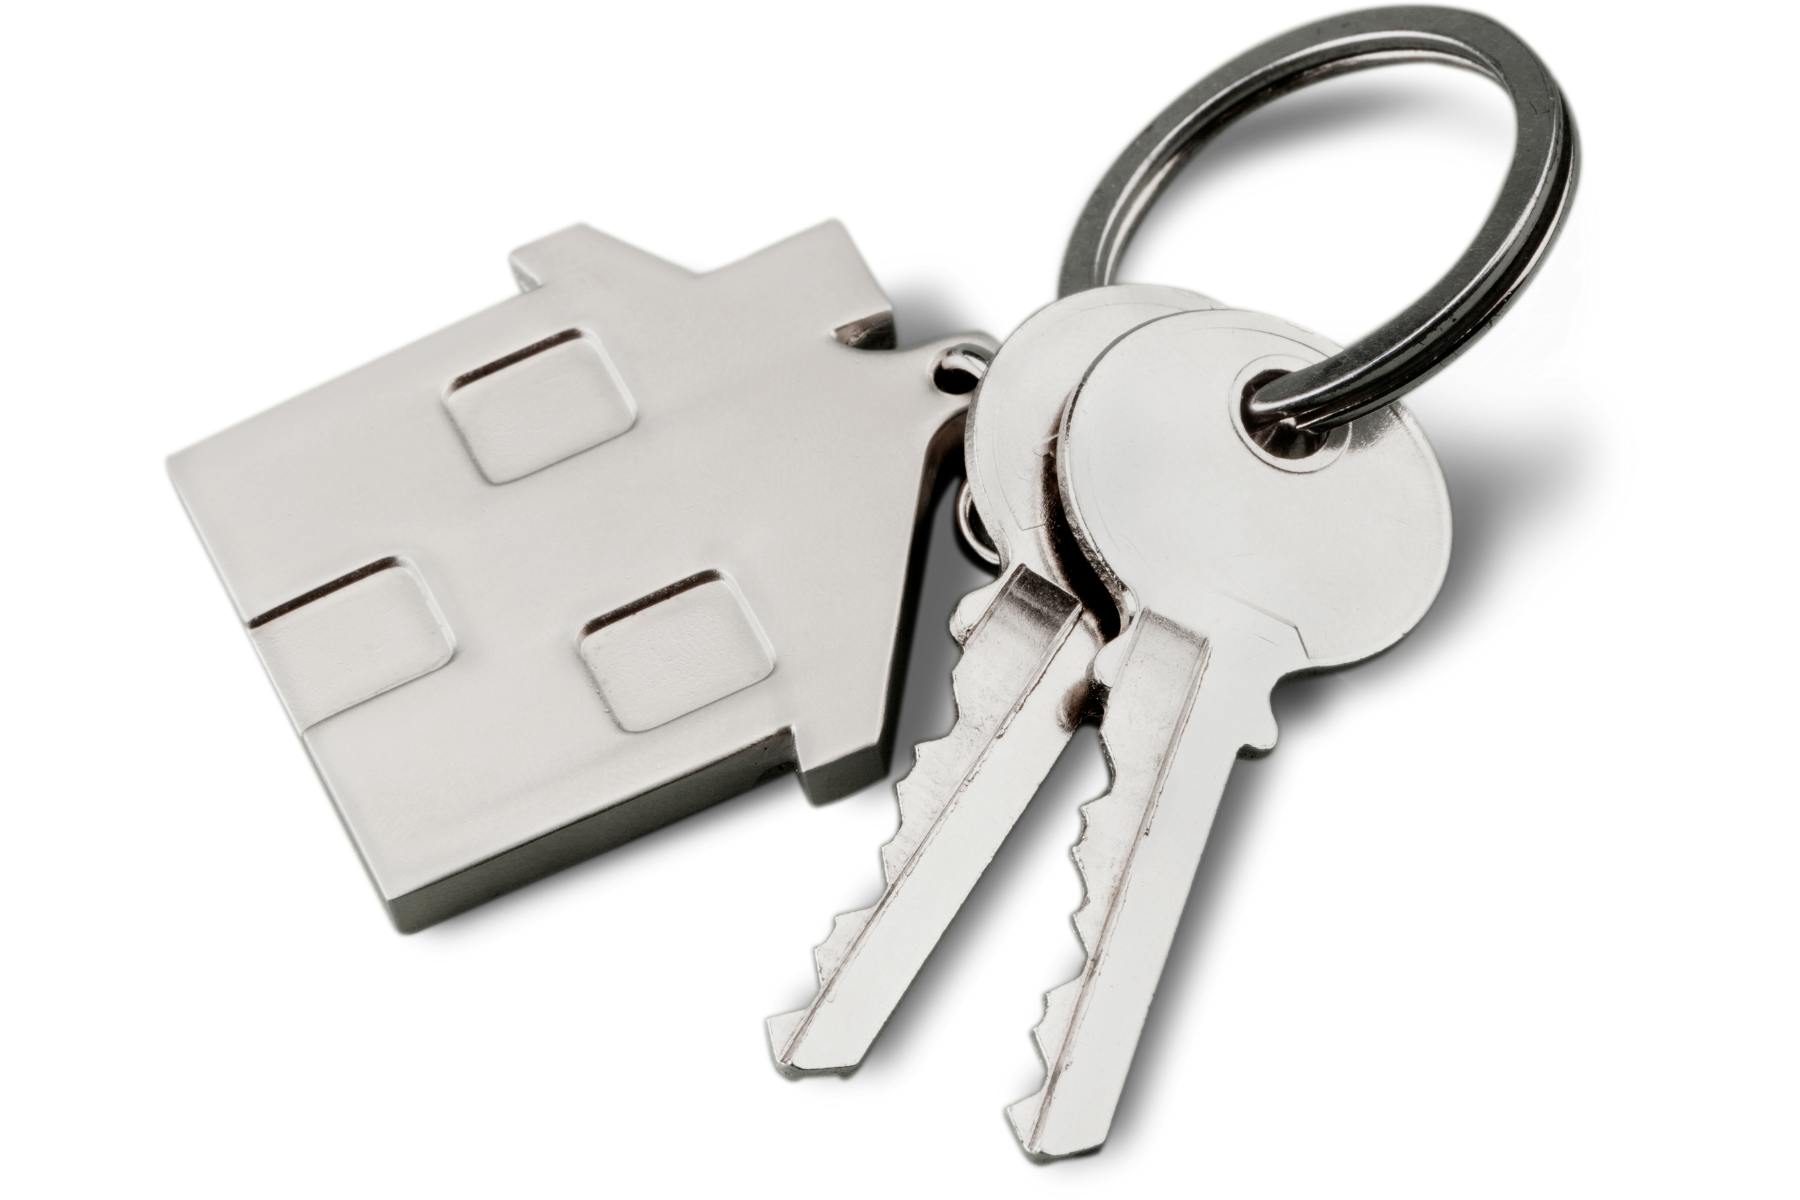 Two keys on a silver key chain shaped like a house.